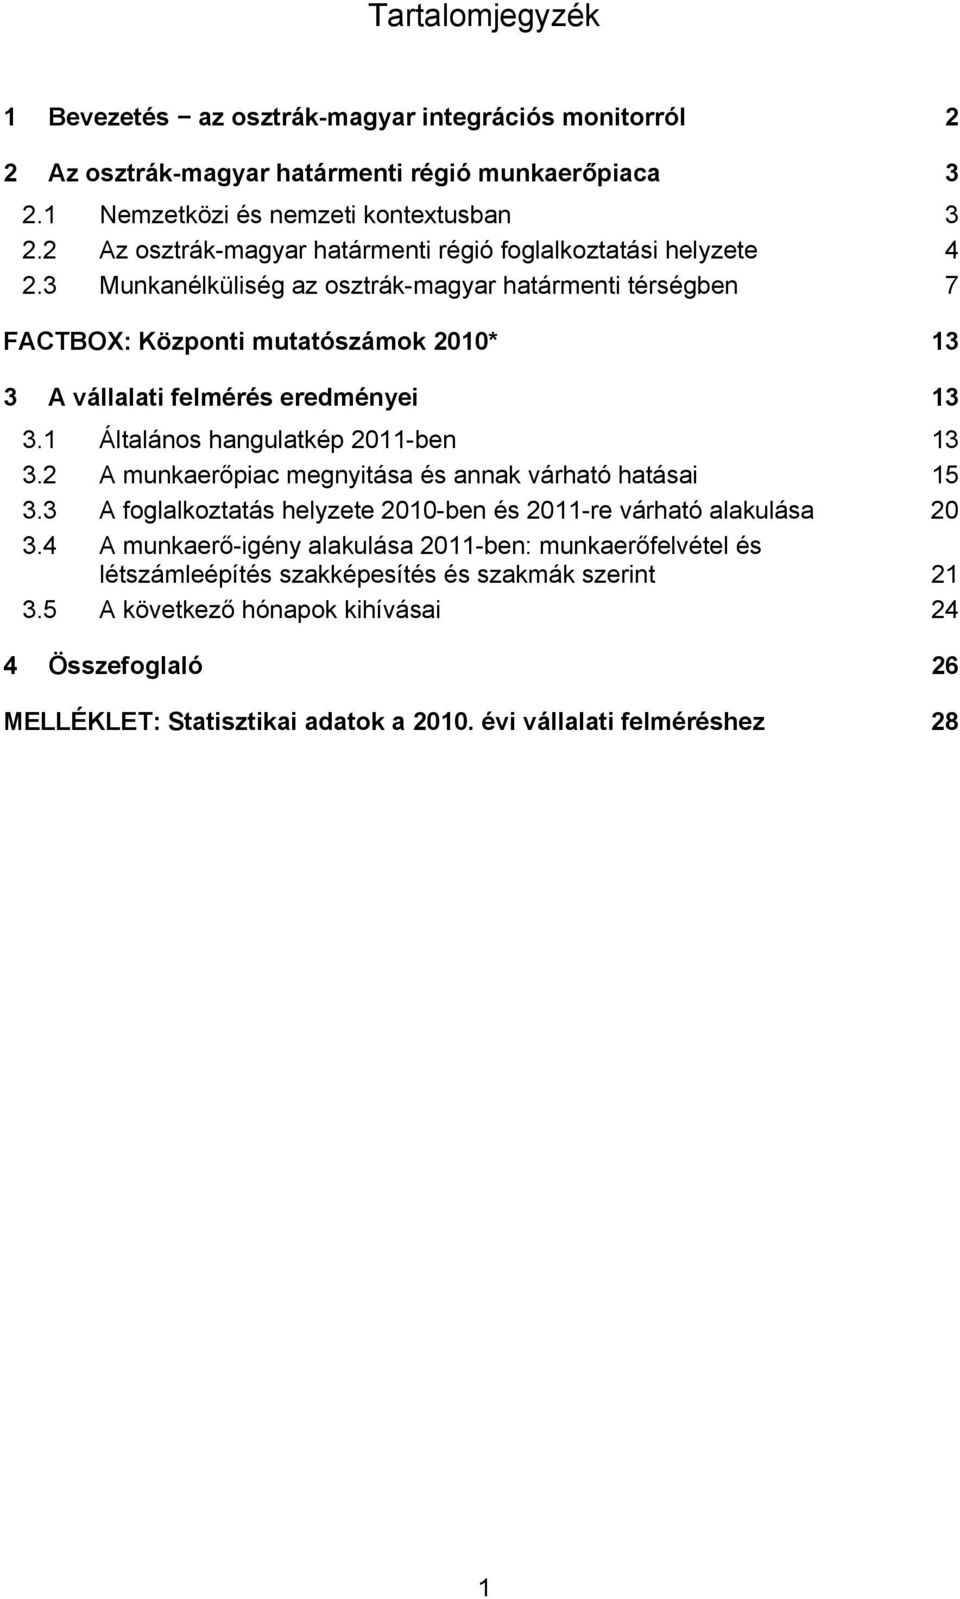 3 Munkanélküliség az osztrák-magyar határmenti térségben 7 FACTBOX: Központi mutatószámok 2010* 13 3 A vállalati felmérés eredményei 13 3.1 Általános hangulatkép 2011-ben 13 3.